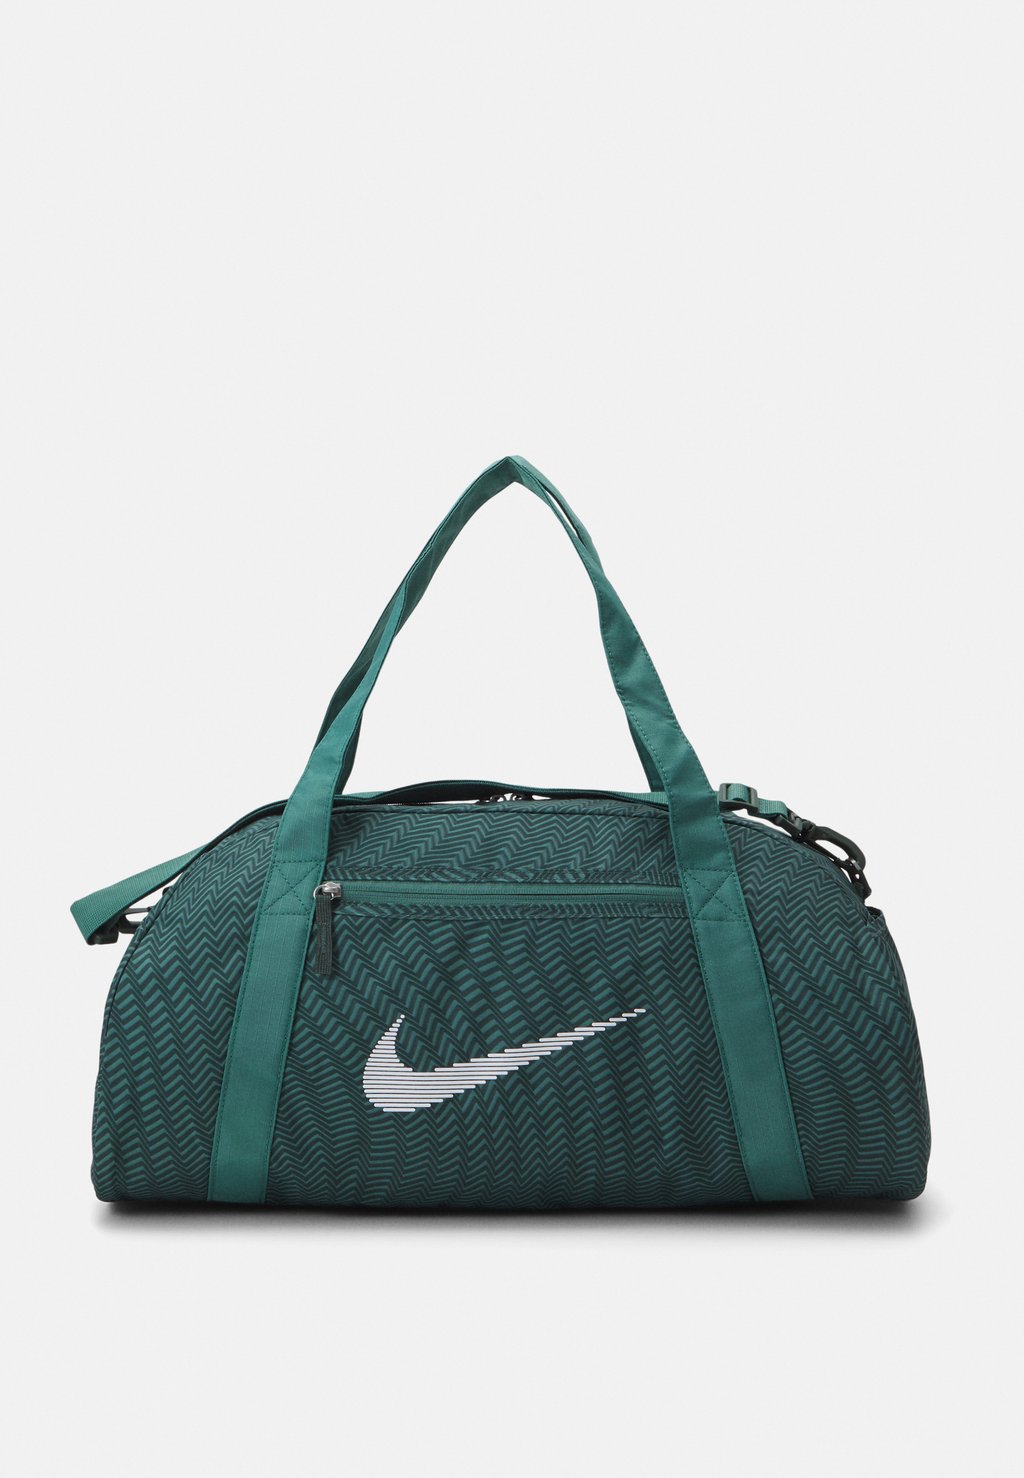 Спортивная сумка GYM CLUB Nike, цвет vintage green/bicoastal/white спортивная сумка nike gym club 24 л мультиколор